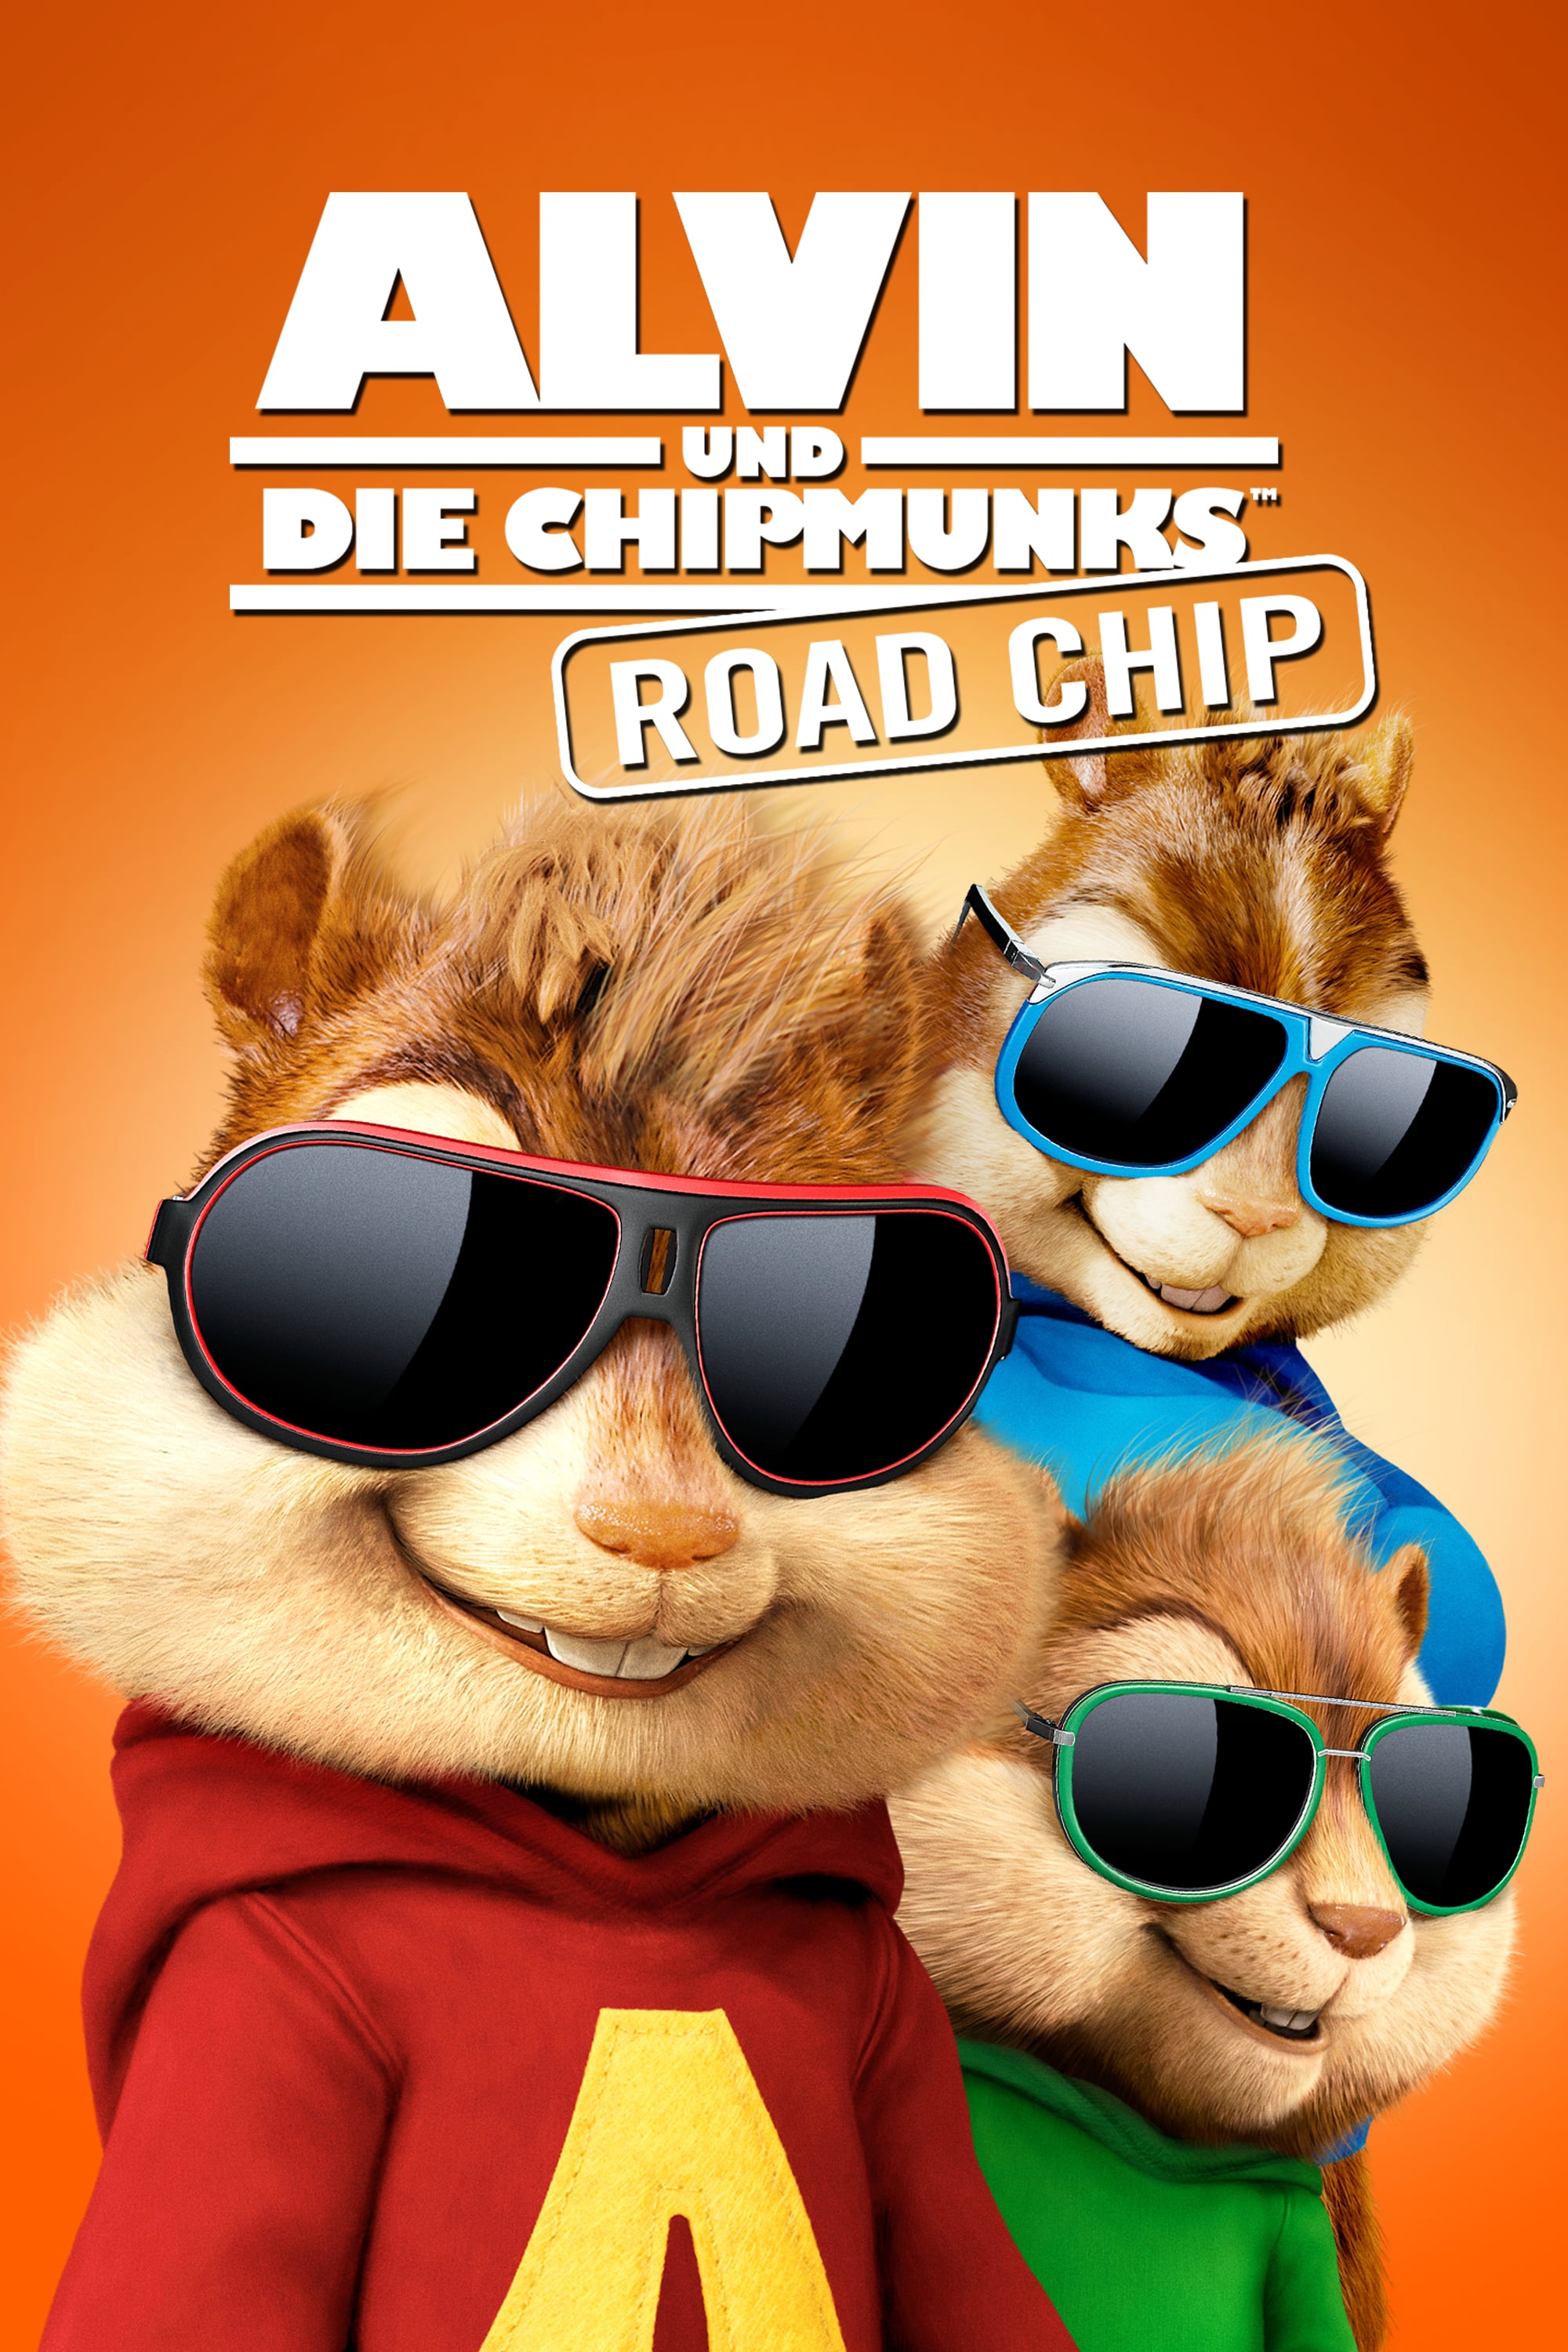 alvin-und-die-chipmunks-road-chip-film-2015-12-17-kulthelden-de